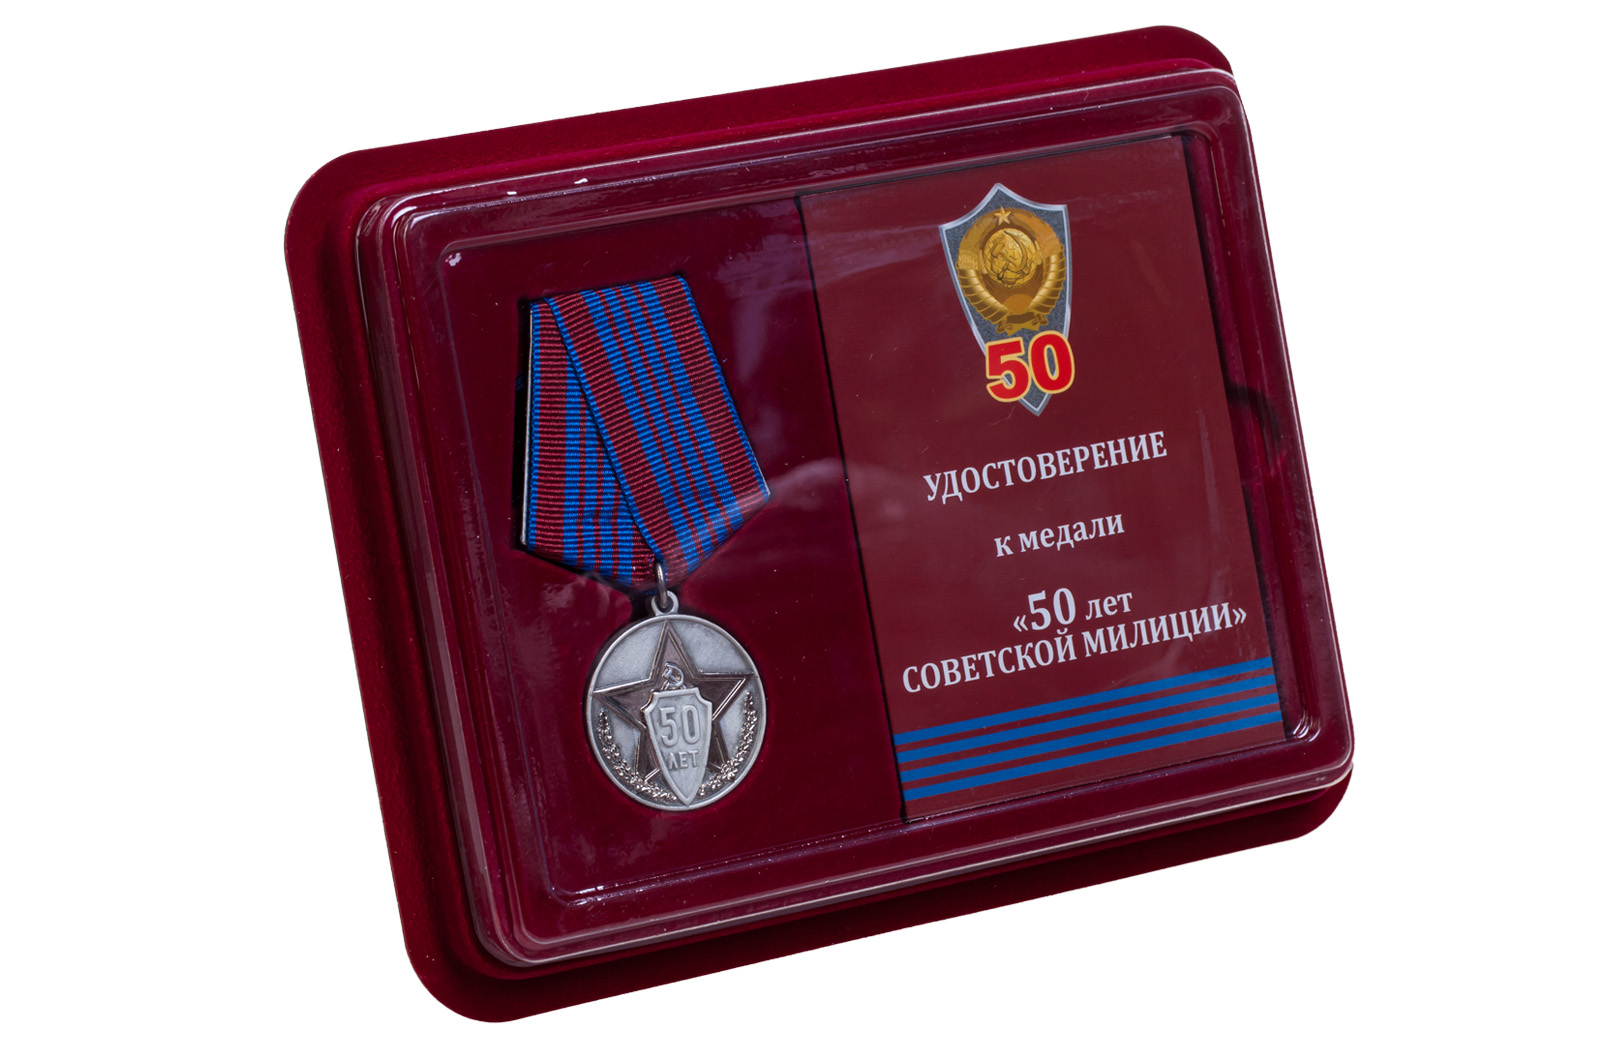 Памятная медаль "50 лет советской милиции" 